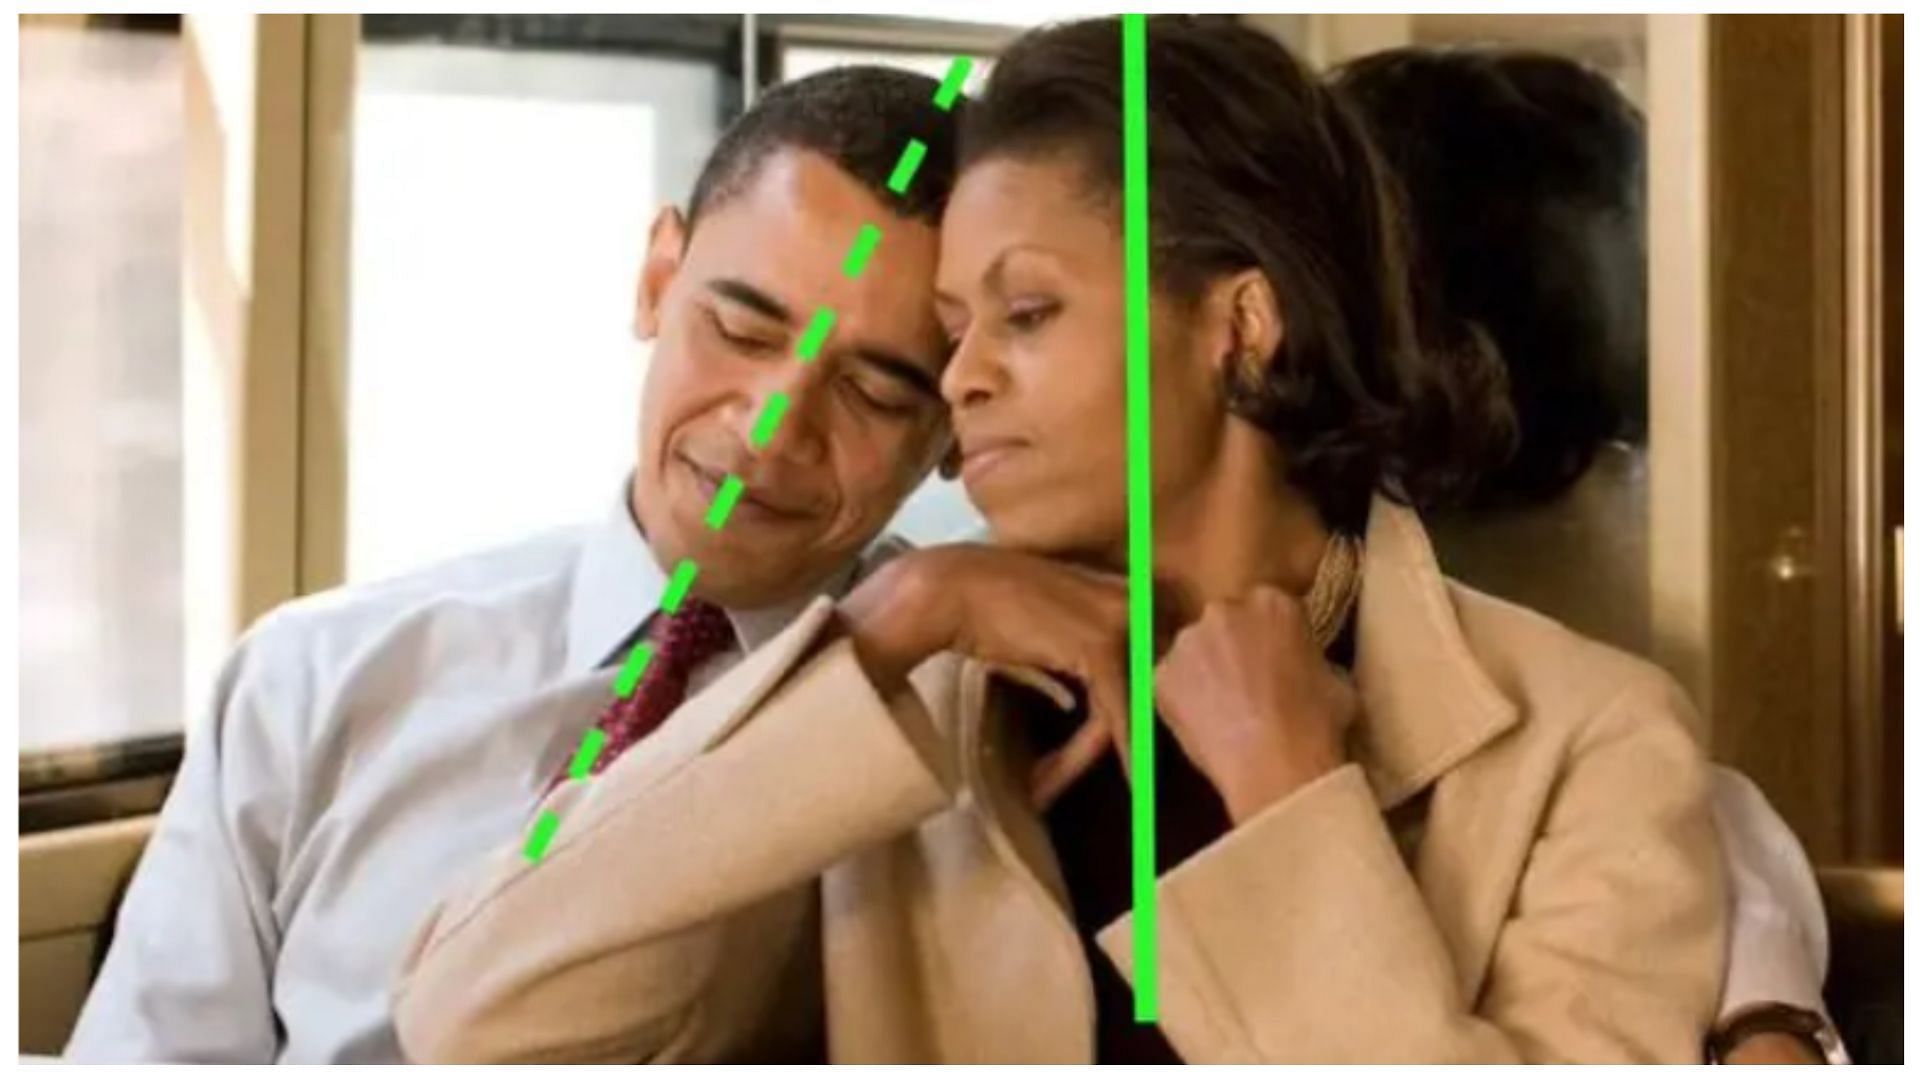 El juego Pulling man en TikTok se probó en Michelle y Barack Obama (imagen a través de Wegotthiscovered)